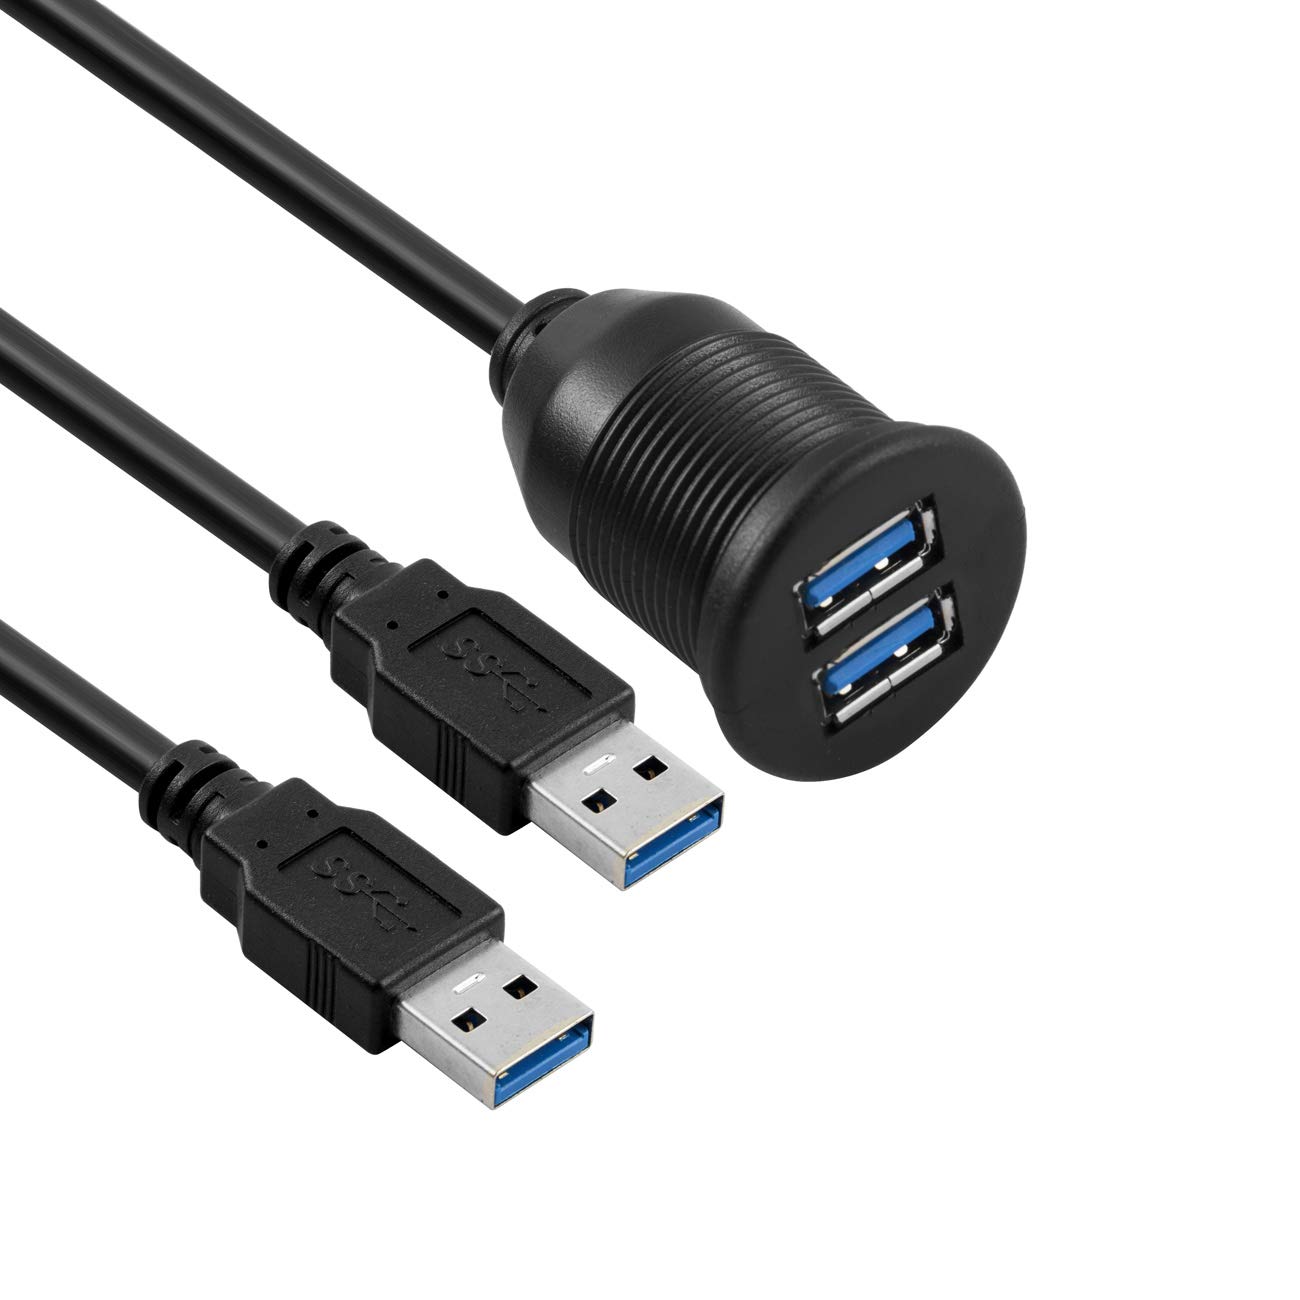 USB Armaturenbrett-Kabel für bündige Montage, 1 Meter, USB 3.0, Verlängerungskabel für Armaturenbrett, für Auto, Boot, Motorrad von baolongking